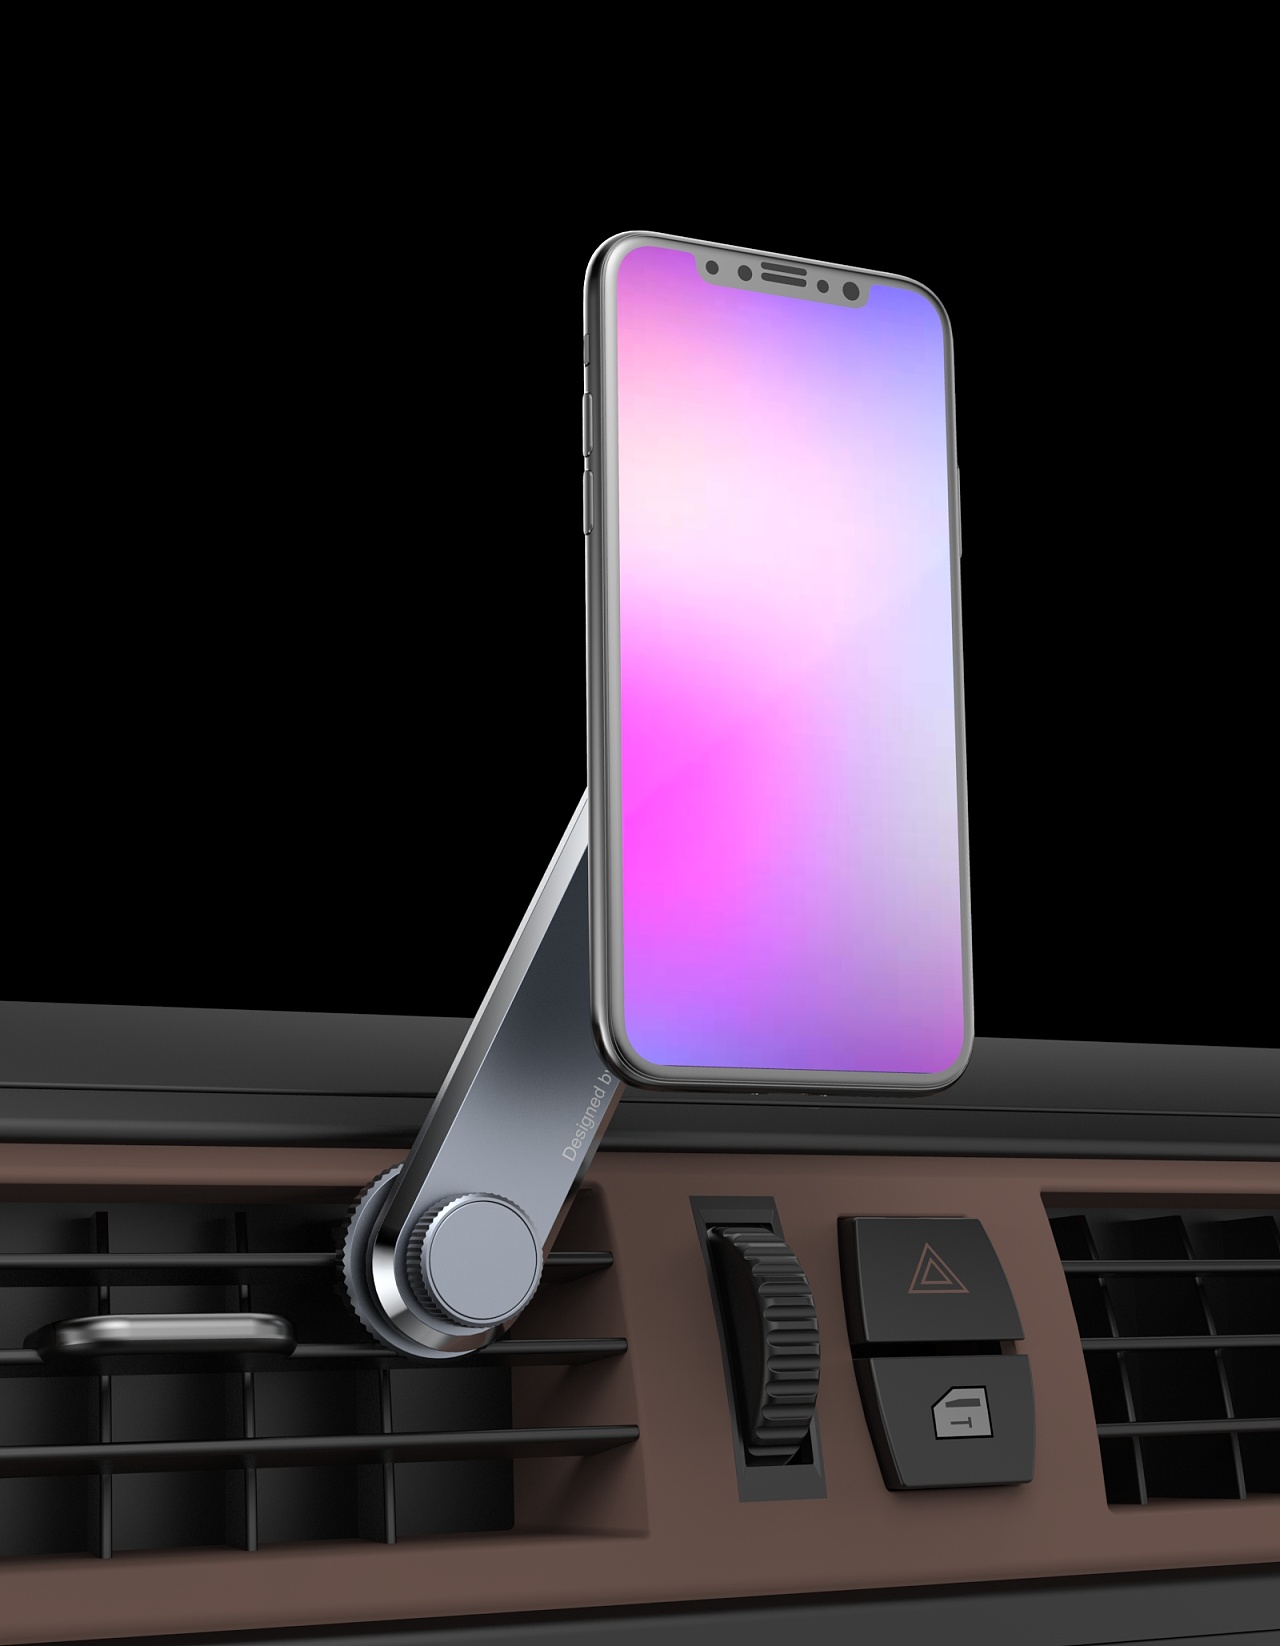 硅胶吸盘式360度汽车玻璃手机架新款创意多功能车载导航手机支架-阿里巴巴